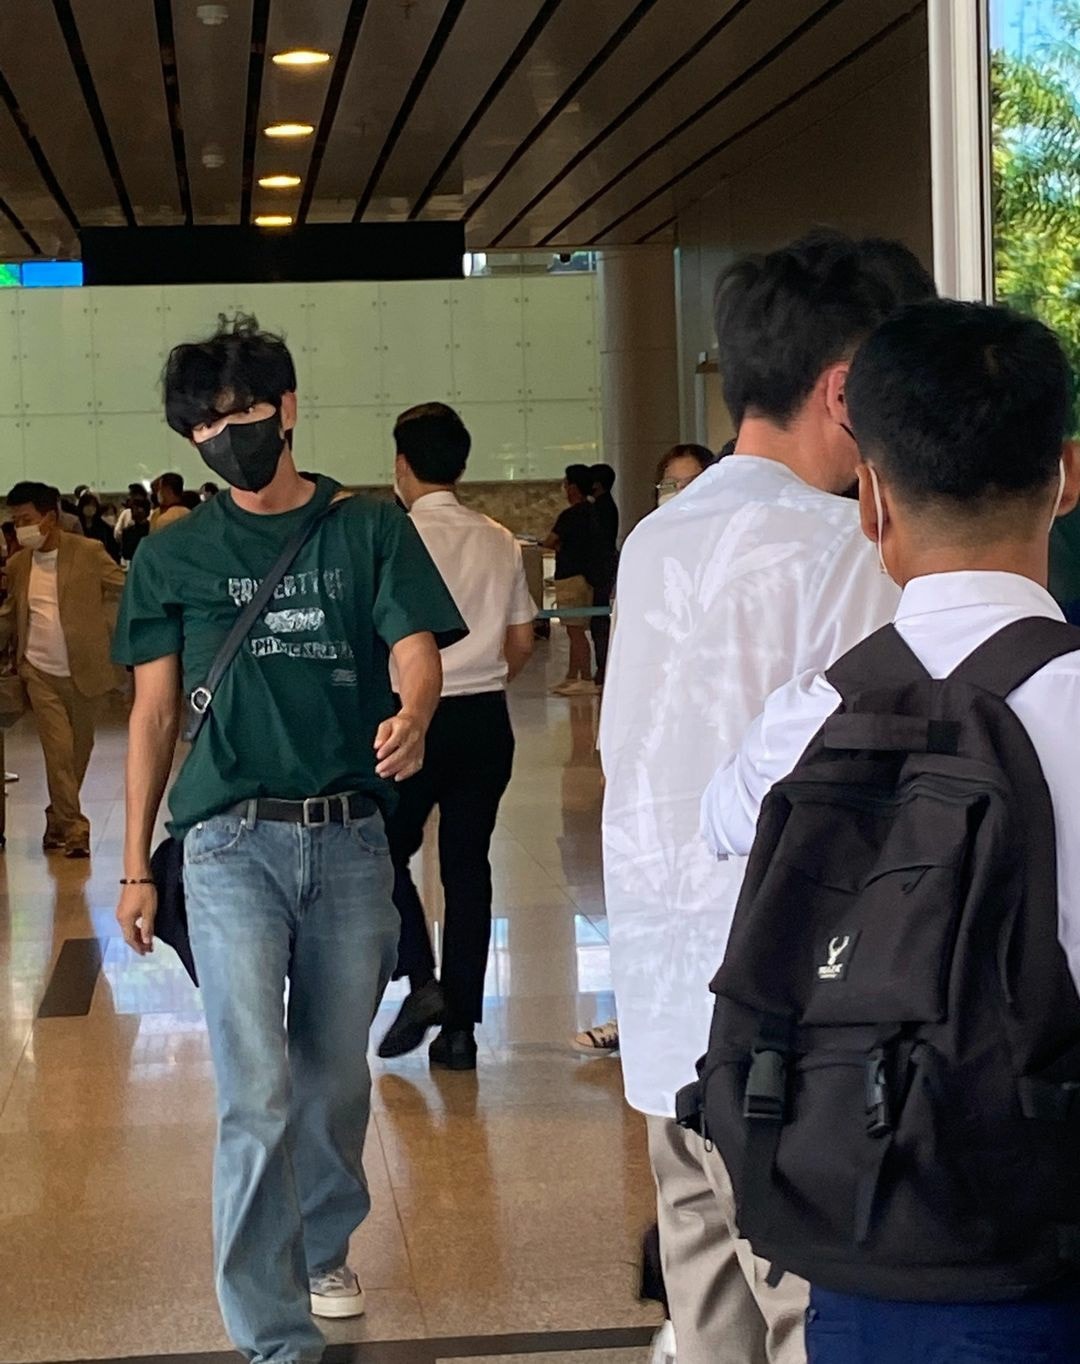 Tài tử Hàn Quốc Lee Jun Ki đến thăm Việt Nam, vừa đáp máy bay xuống Đà Nẵng